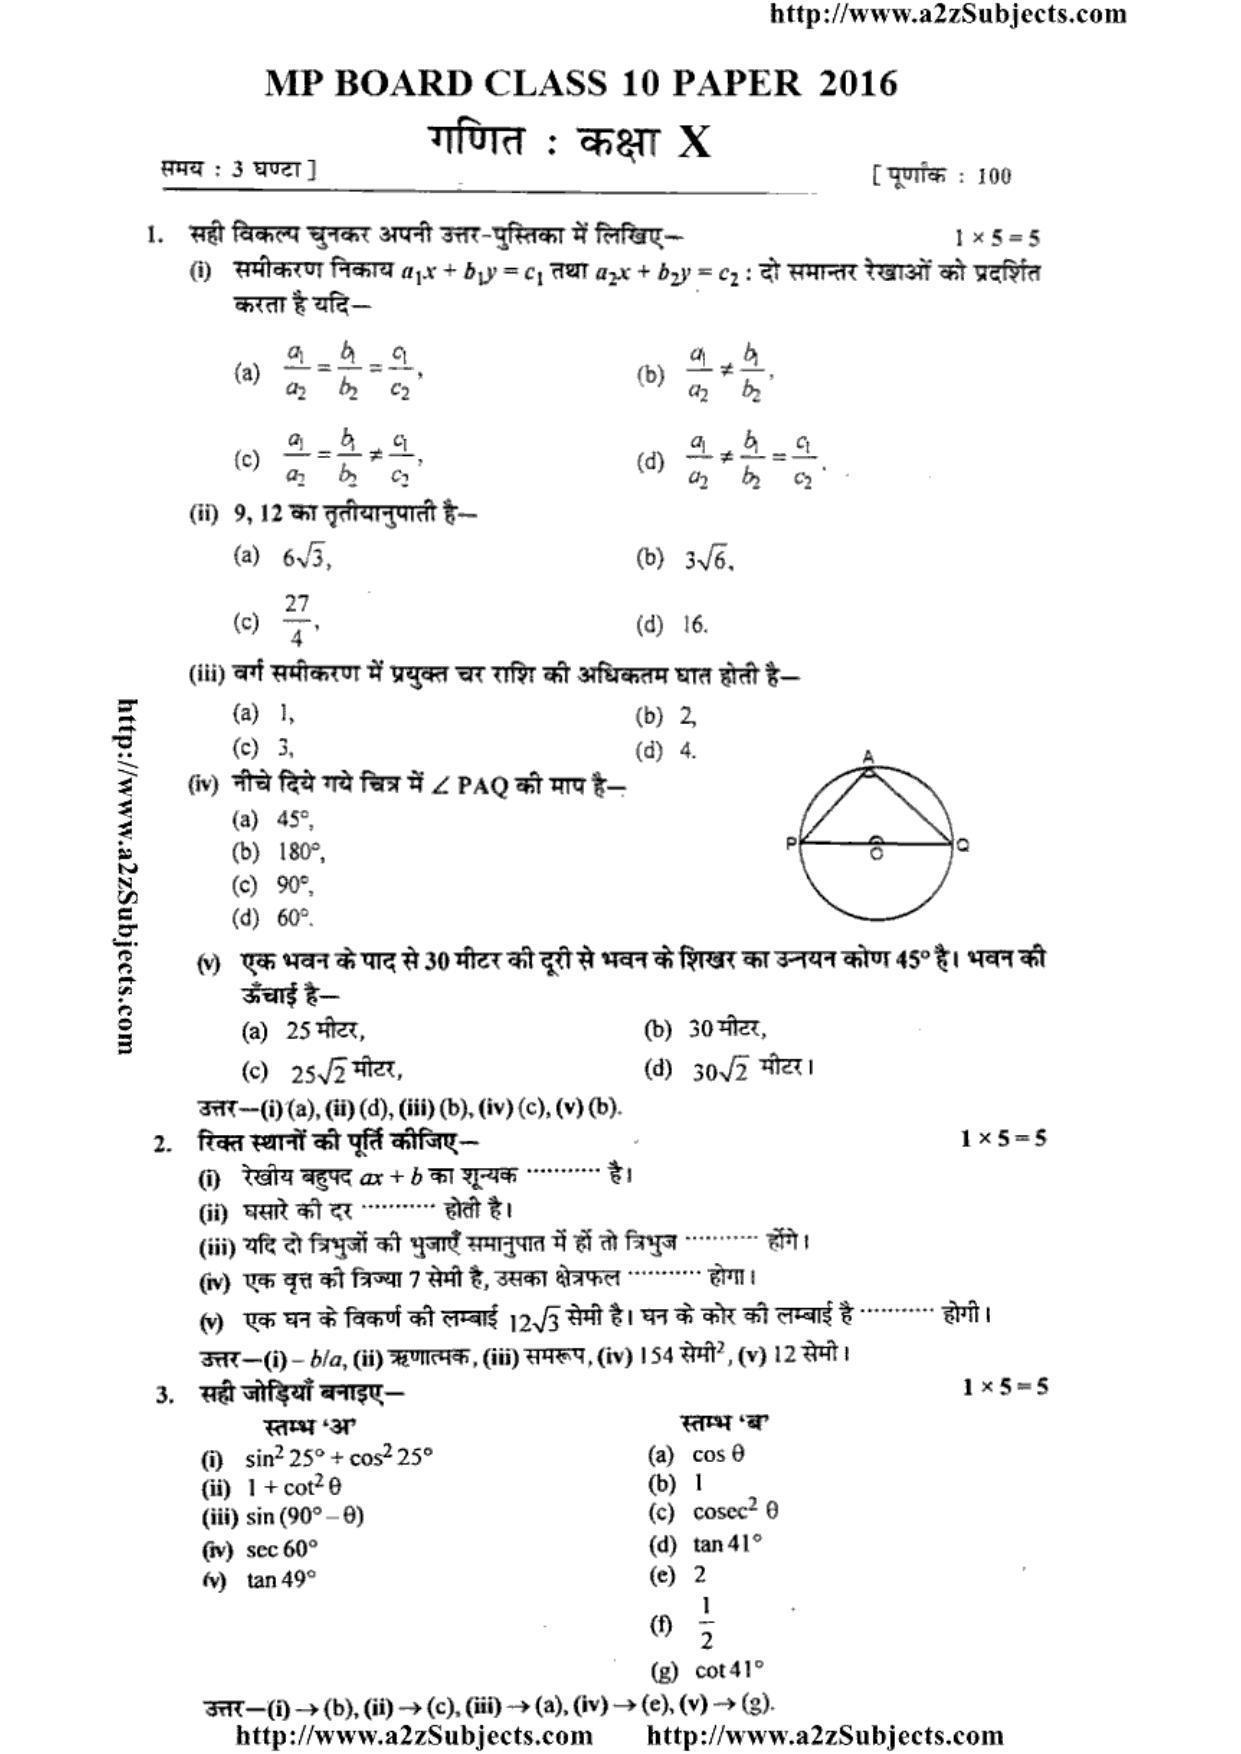 MP Board Class 10 Mathematica ( Hindi Medium) 2016 Question Paper - Page 1